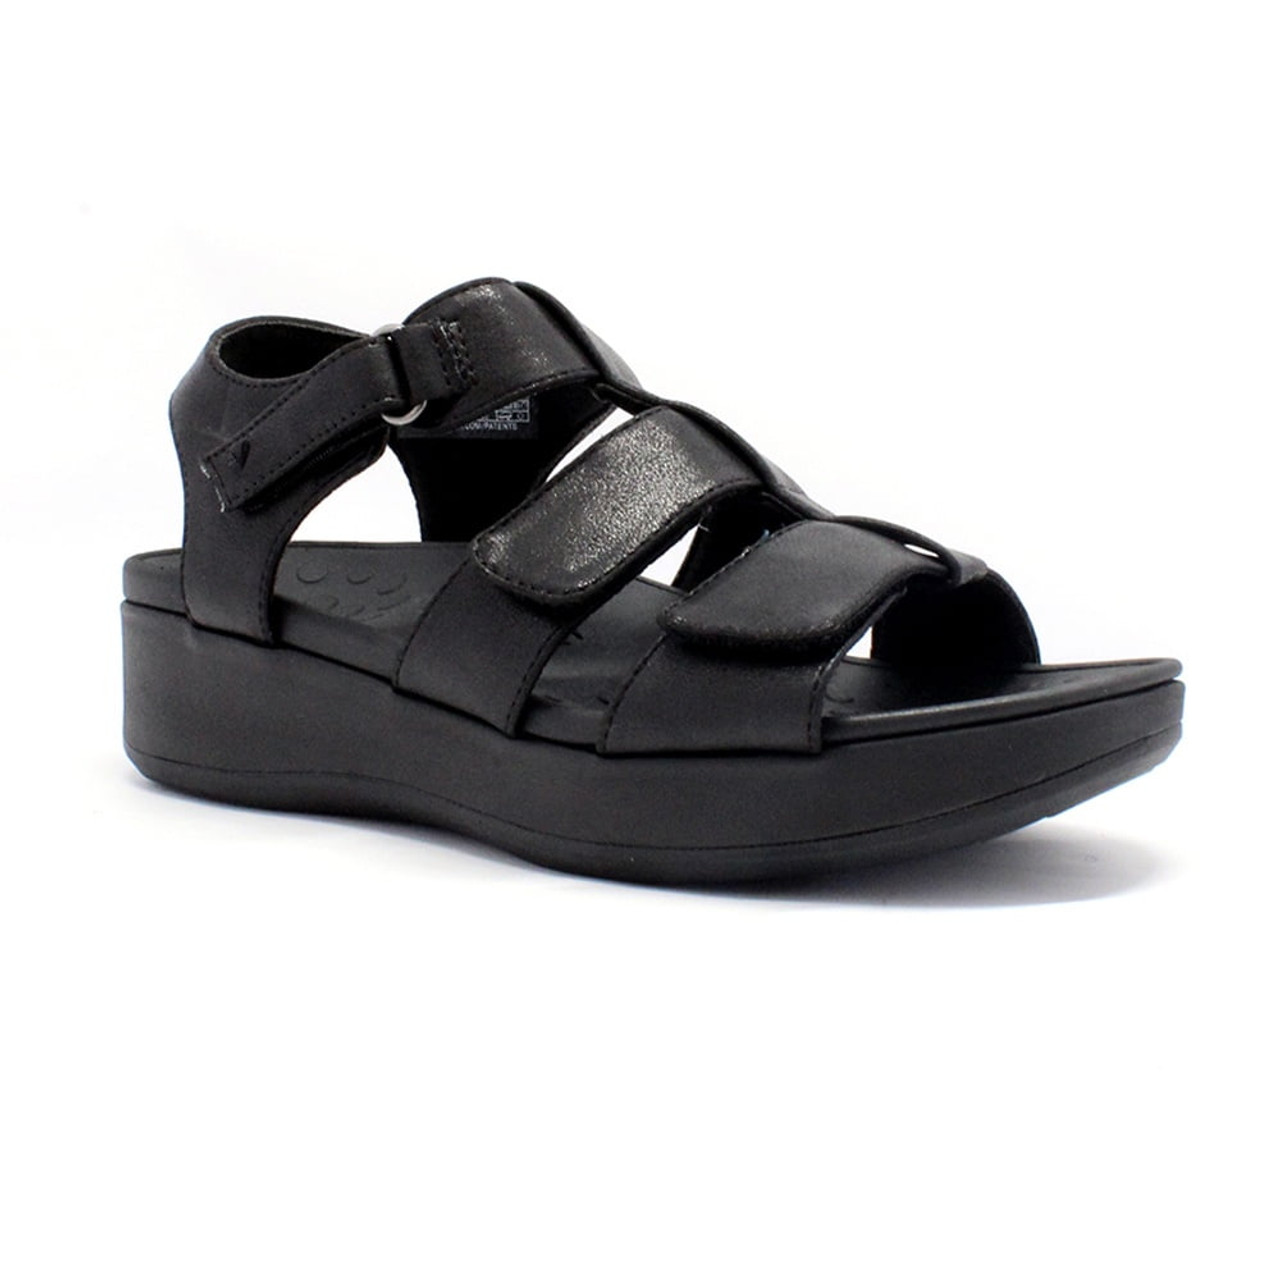 Buy LUNA BLU Black Wedge Heel Sandals from Westside